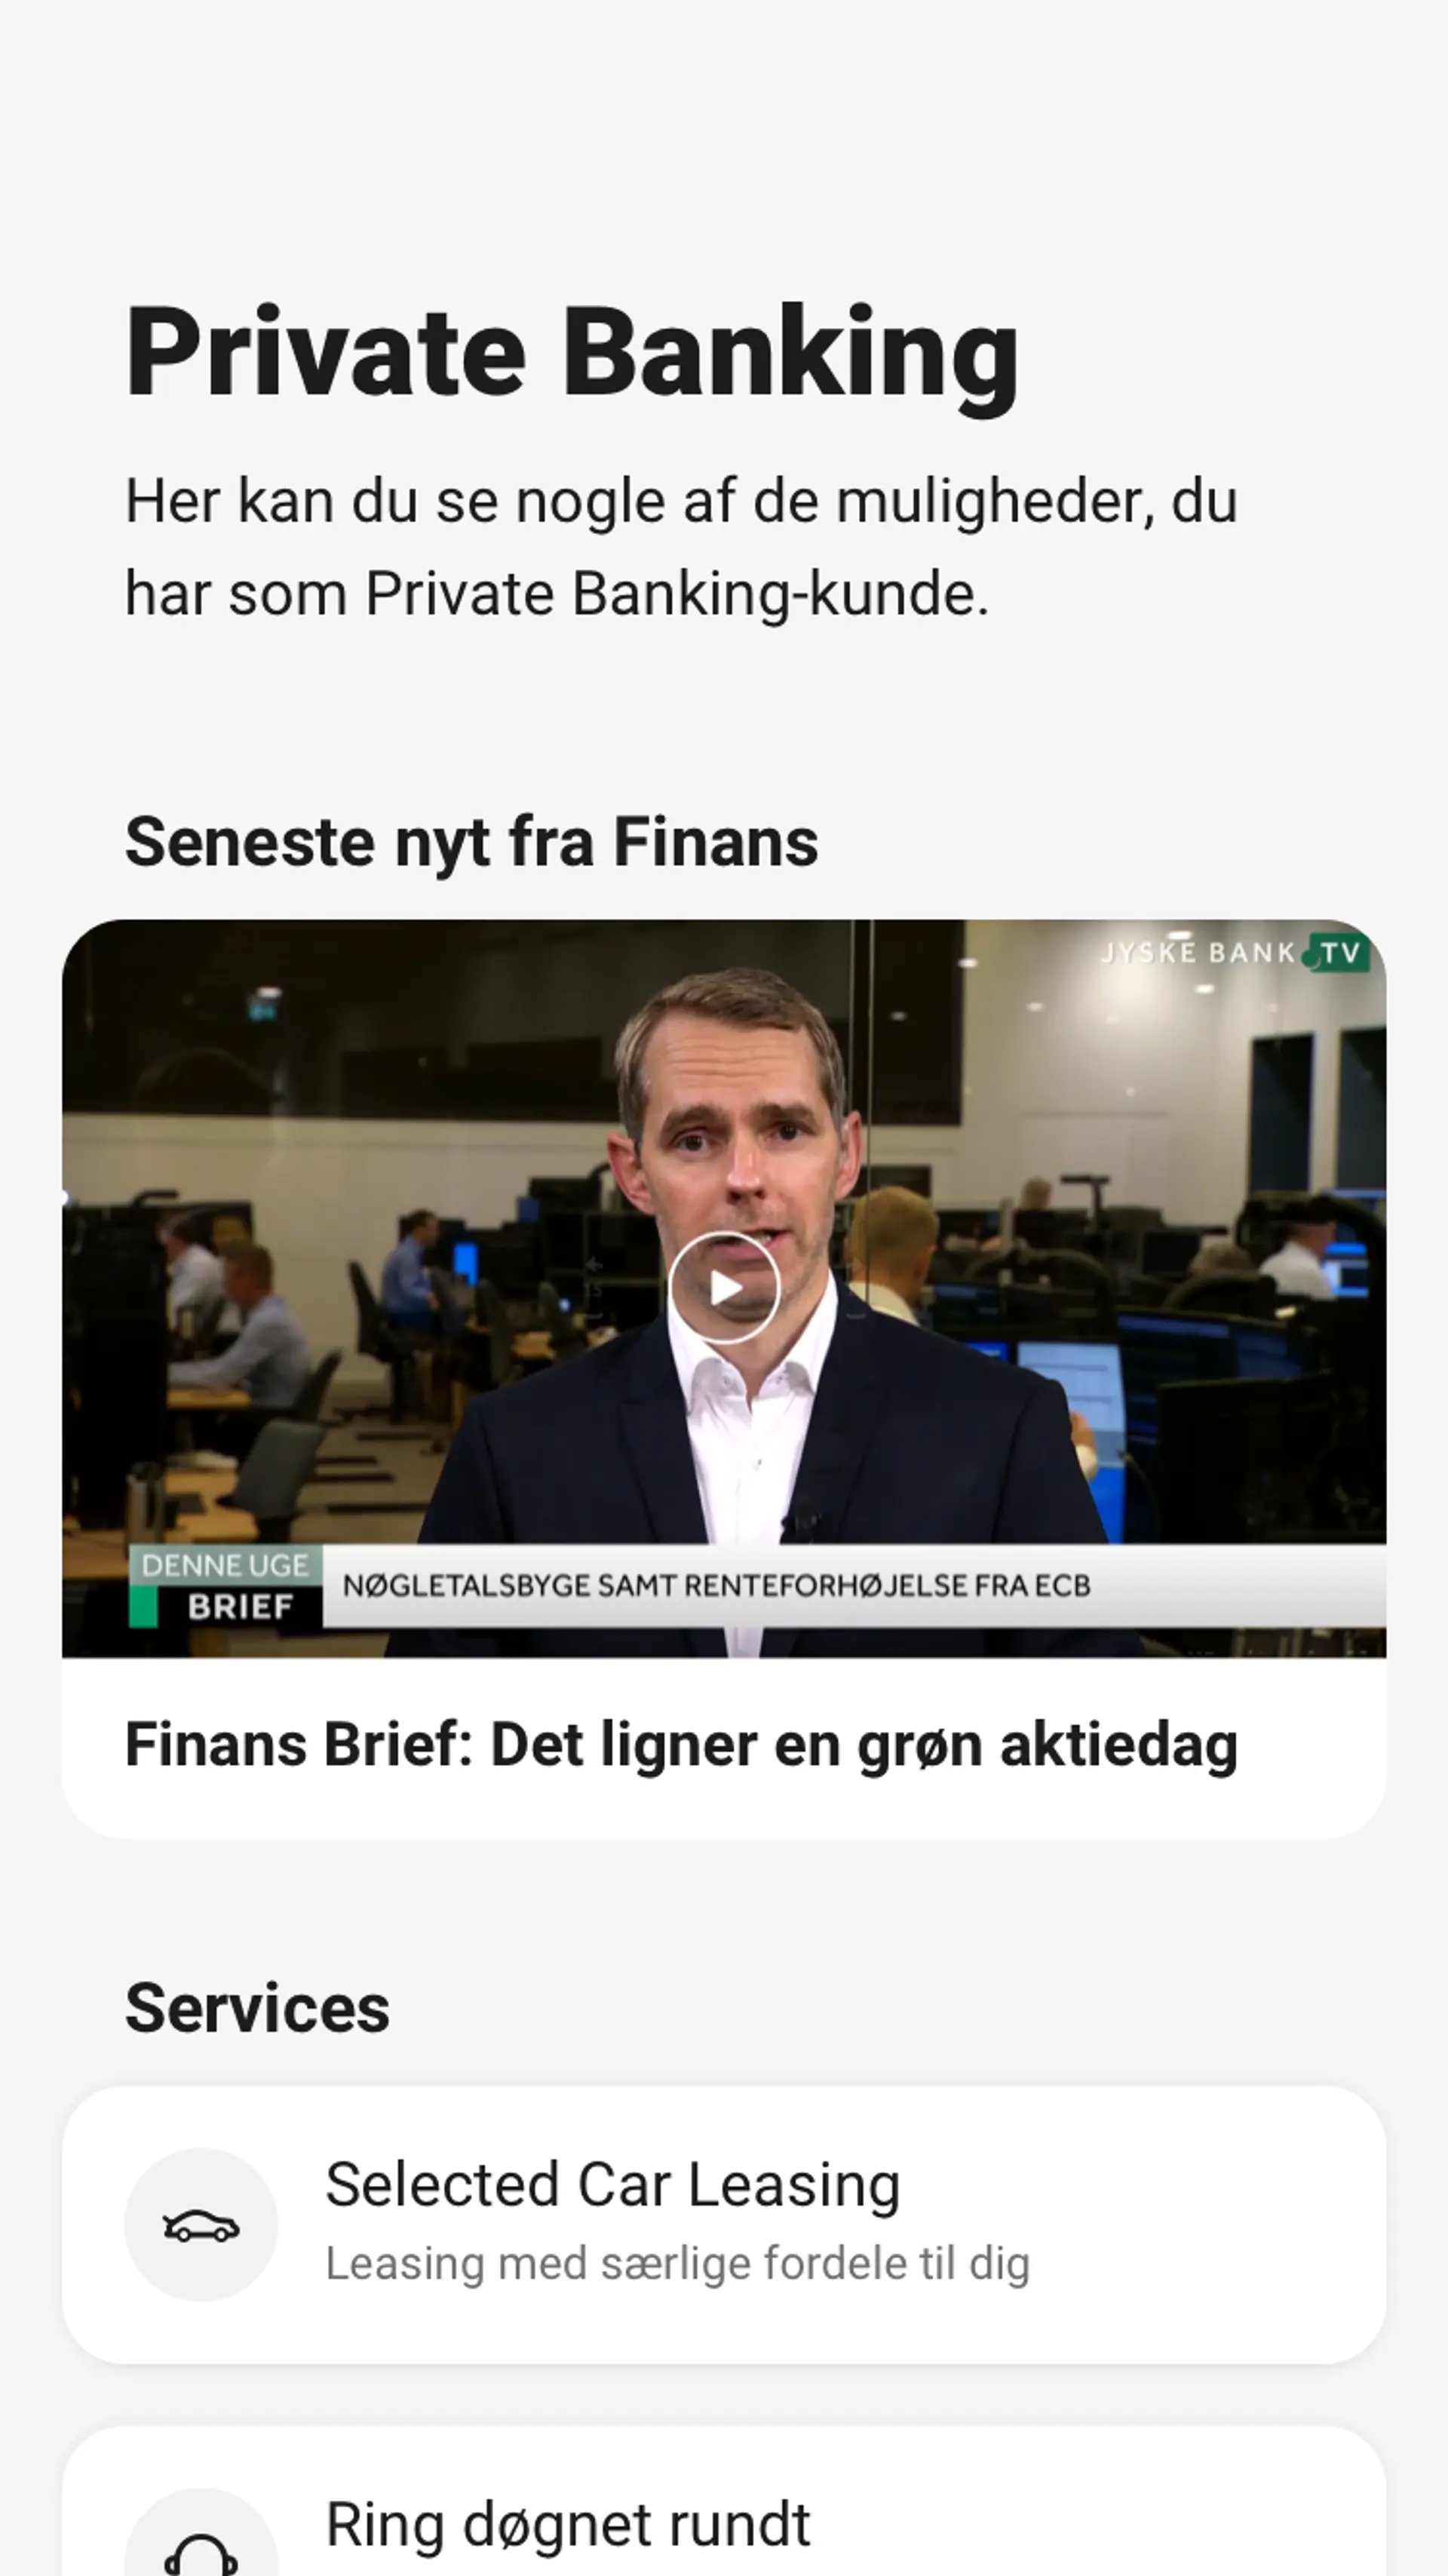 Skærmbillede, der viser private banking-overblikket i mobilbanken